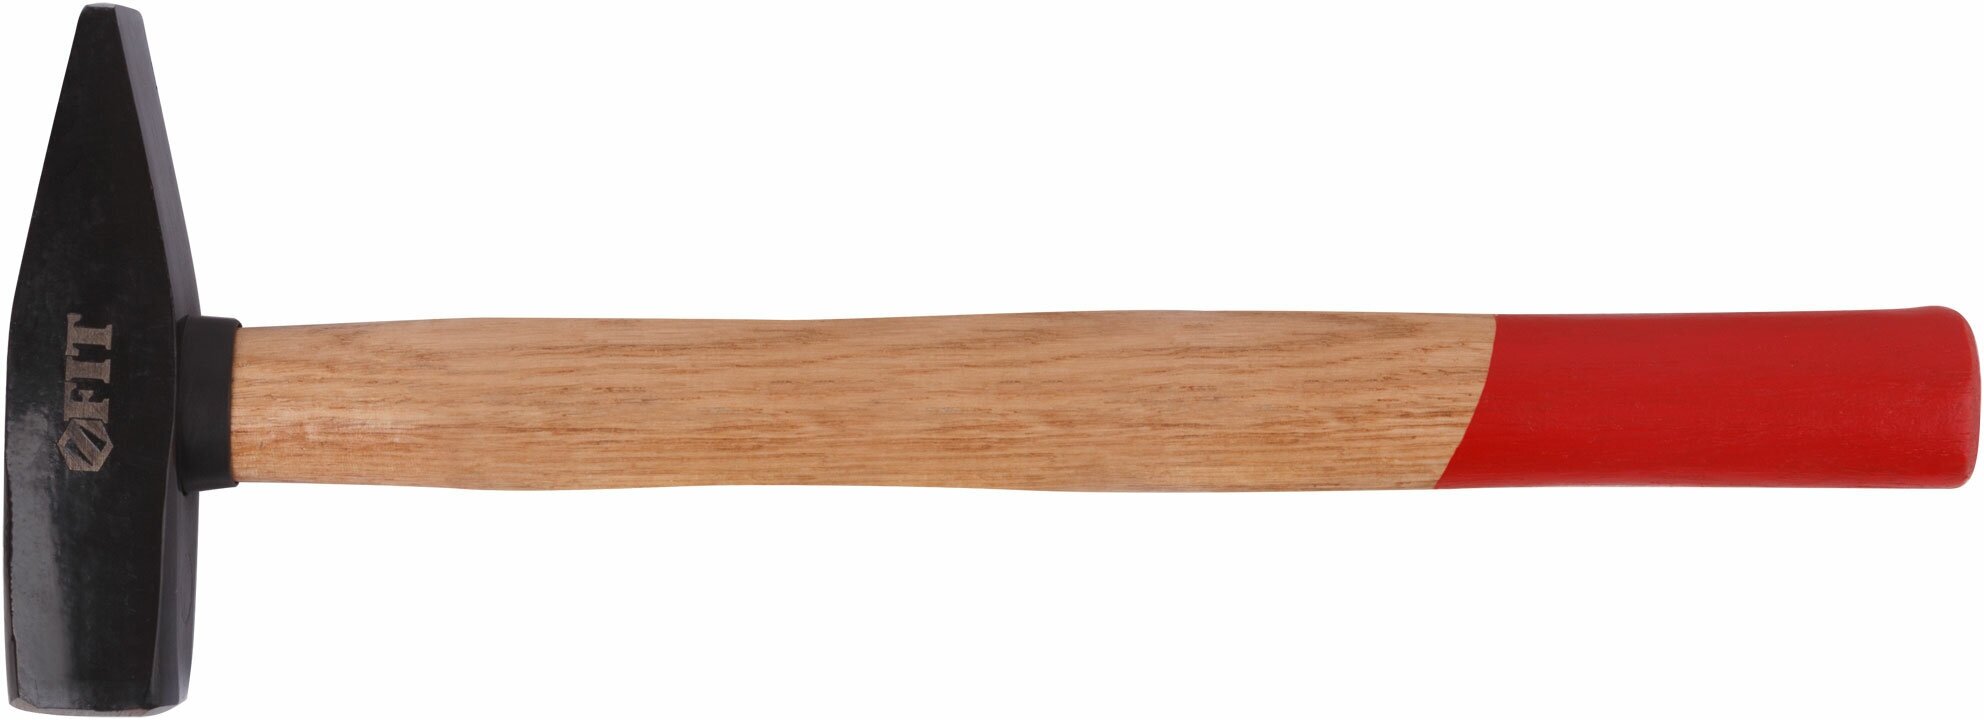 Молоток кованый, деревянная ручка 500 гр.